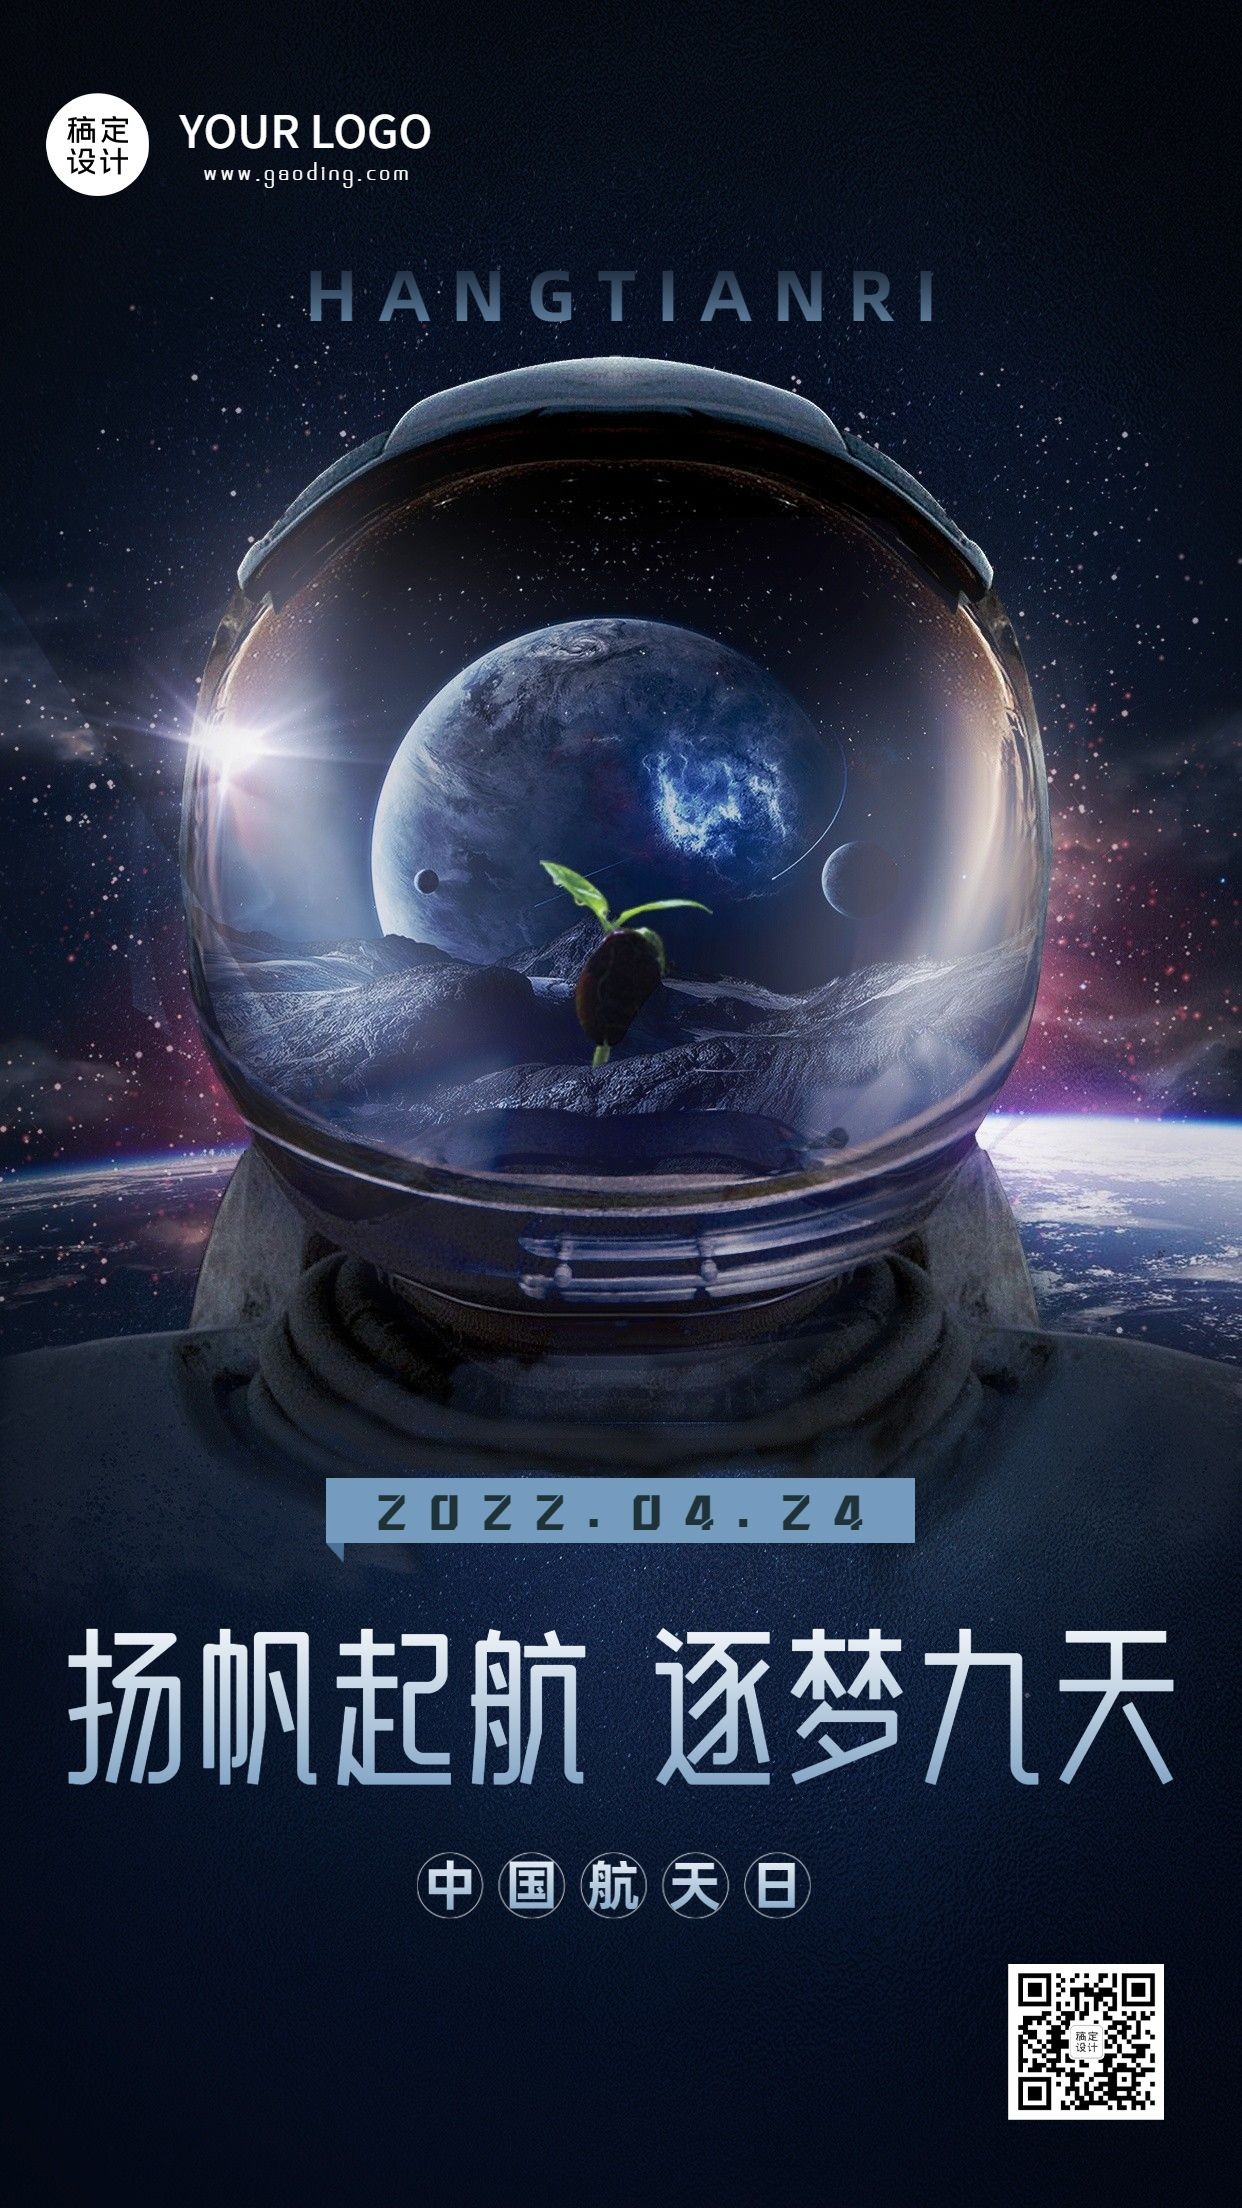 中国航天日节日宣传手机海报预览效果